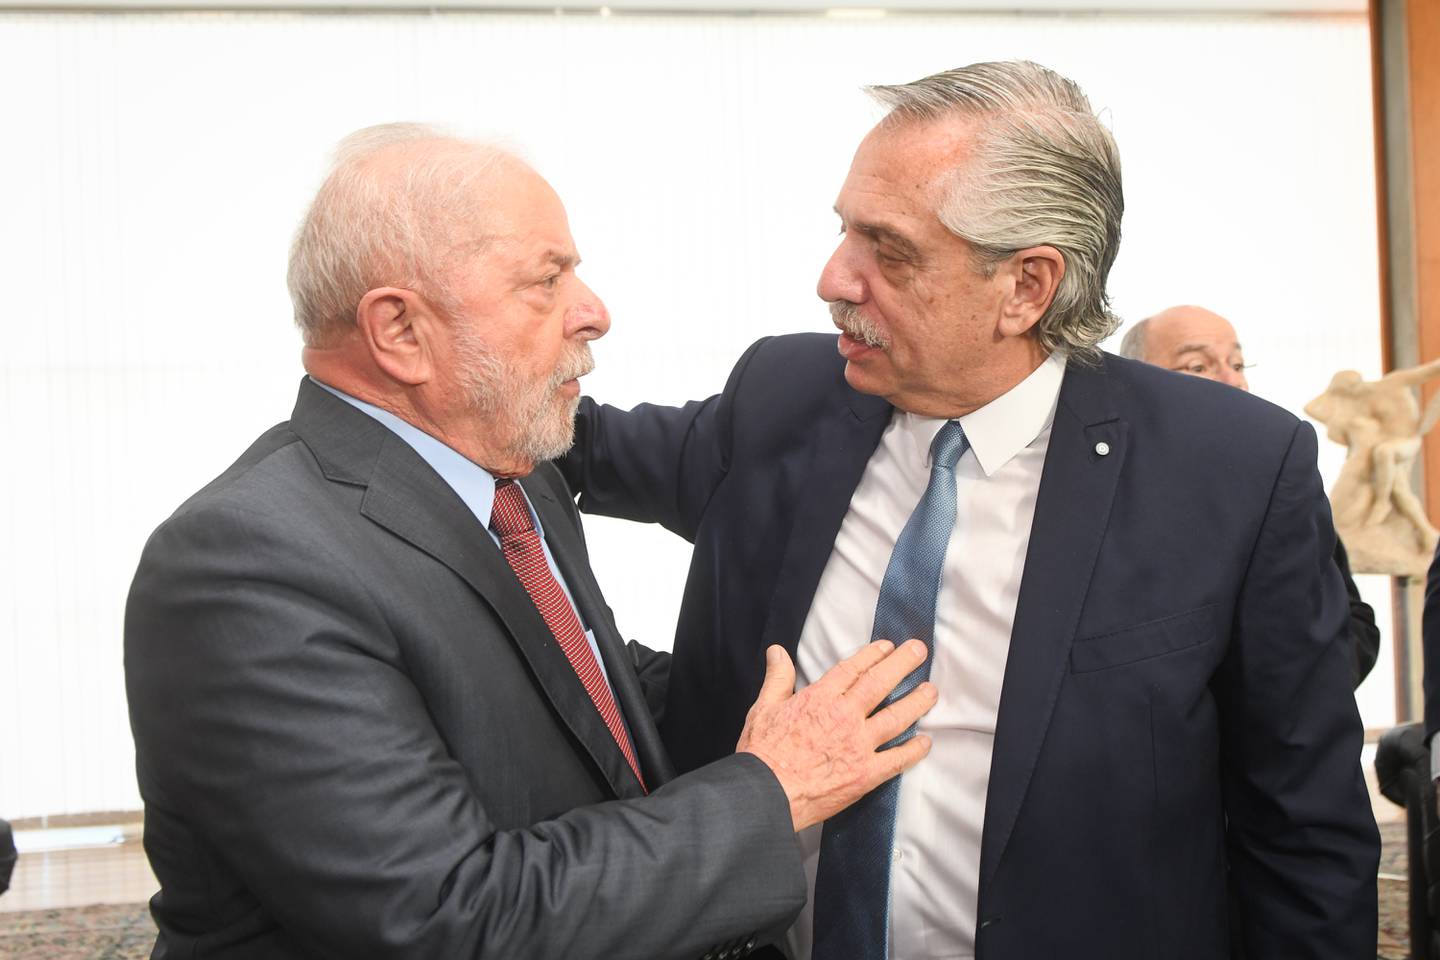 El presidente argentino visitó a Luiz Inácio Lula da Silva, en el Palacio de Itamaraty, sede del Ministerio de Relaciones Exteriores de ese país.dfd